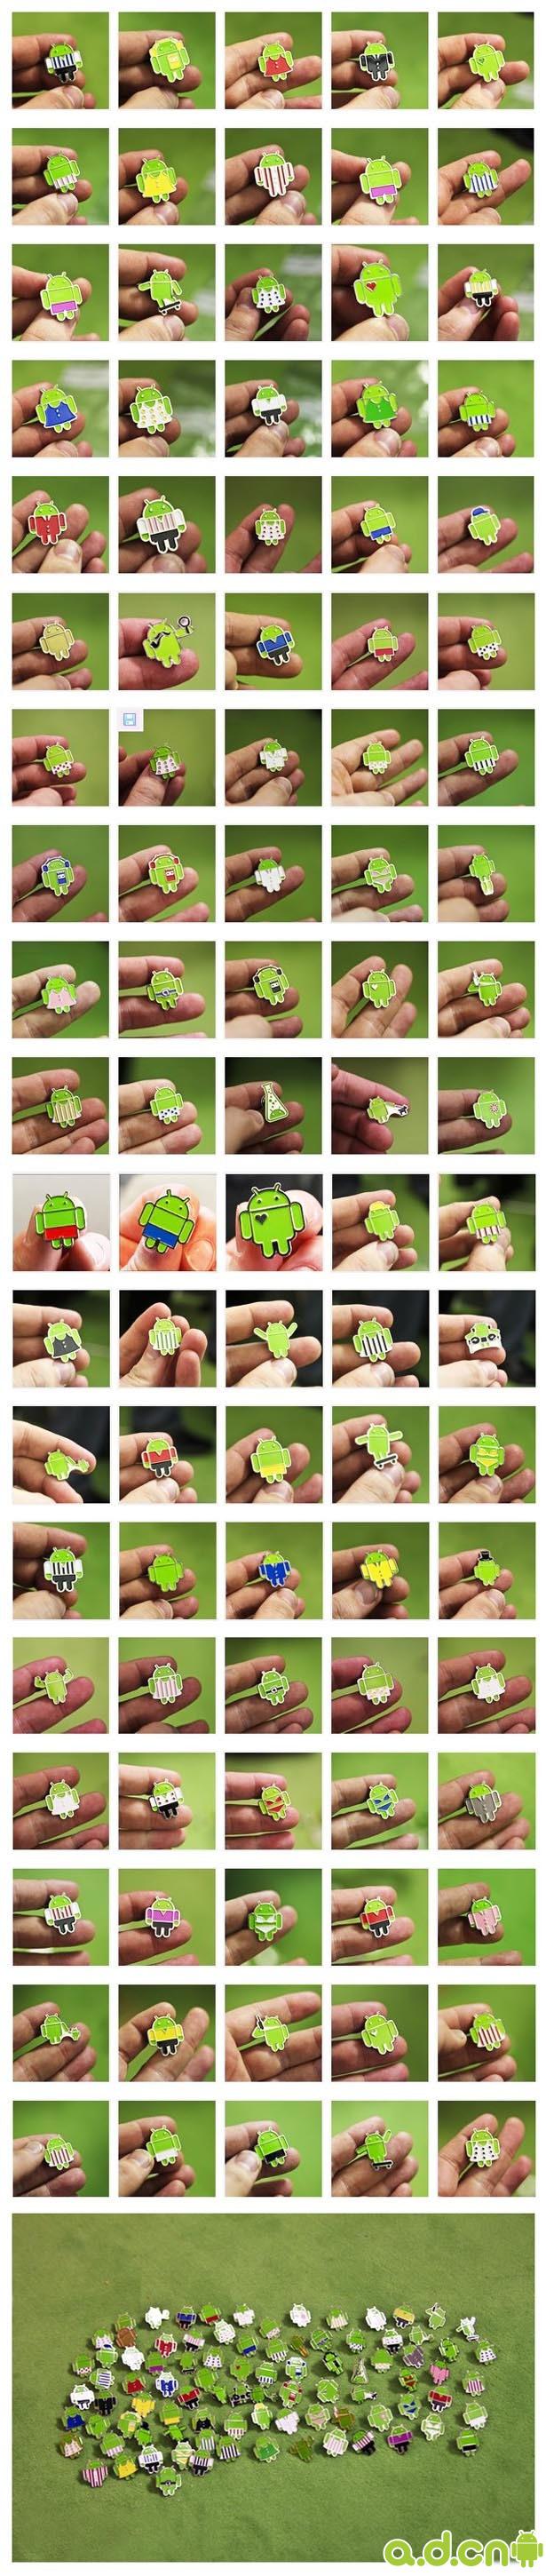 造型各异——限量版 Android 徽章集锦